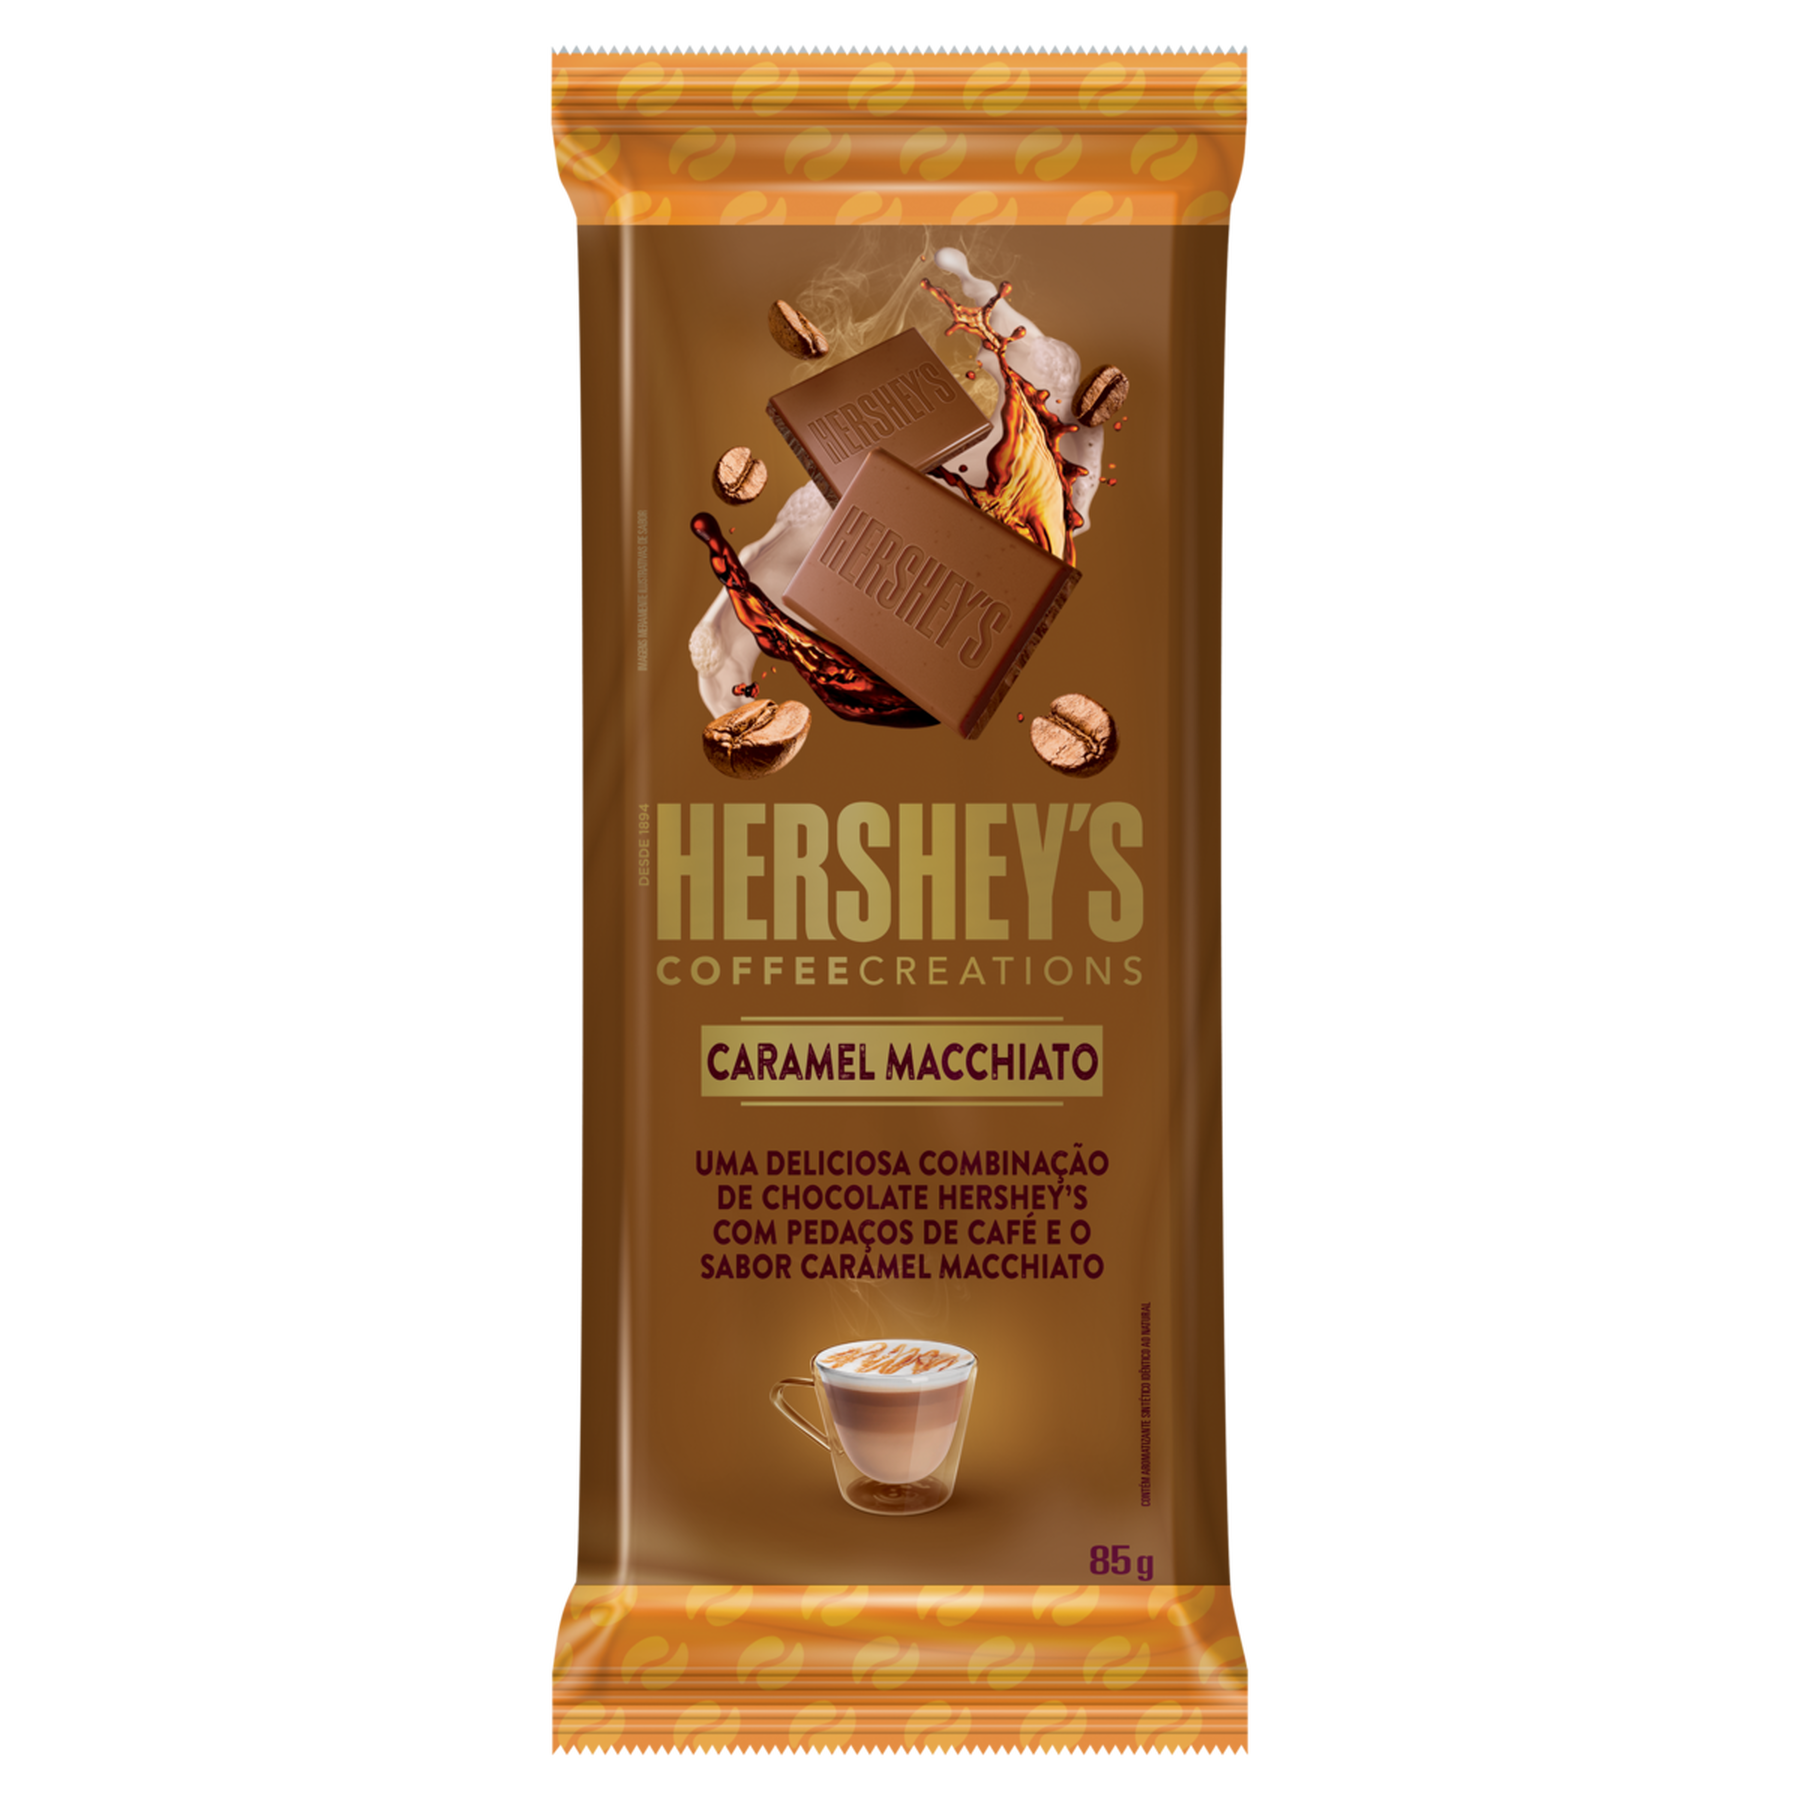 Chocolate Coffee Creations Caramel Macchiato Hershey's Pacote 85g